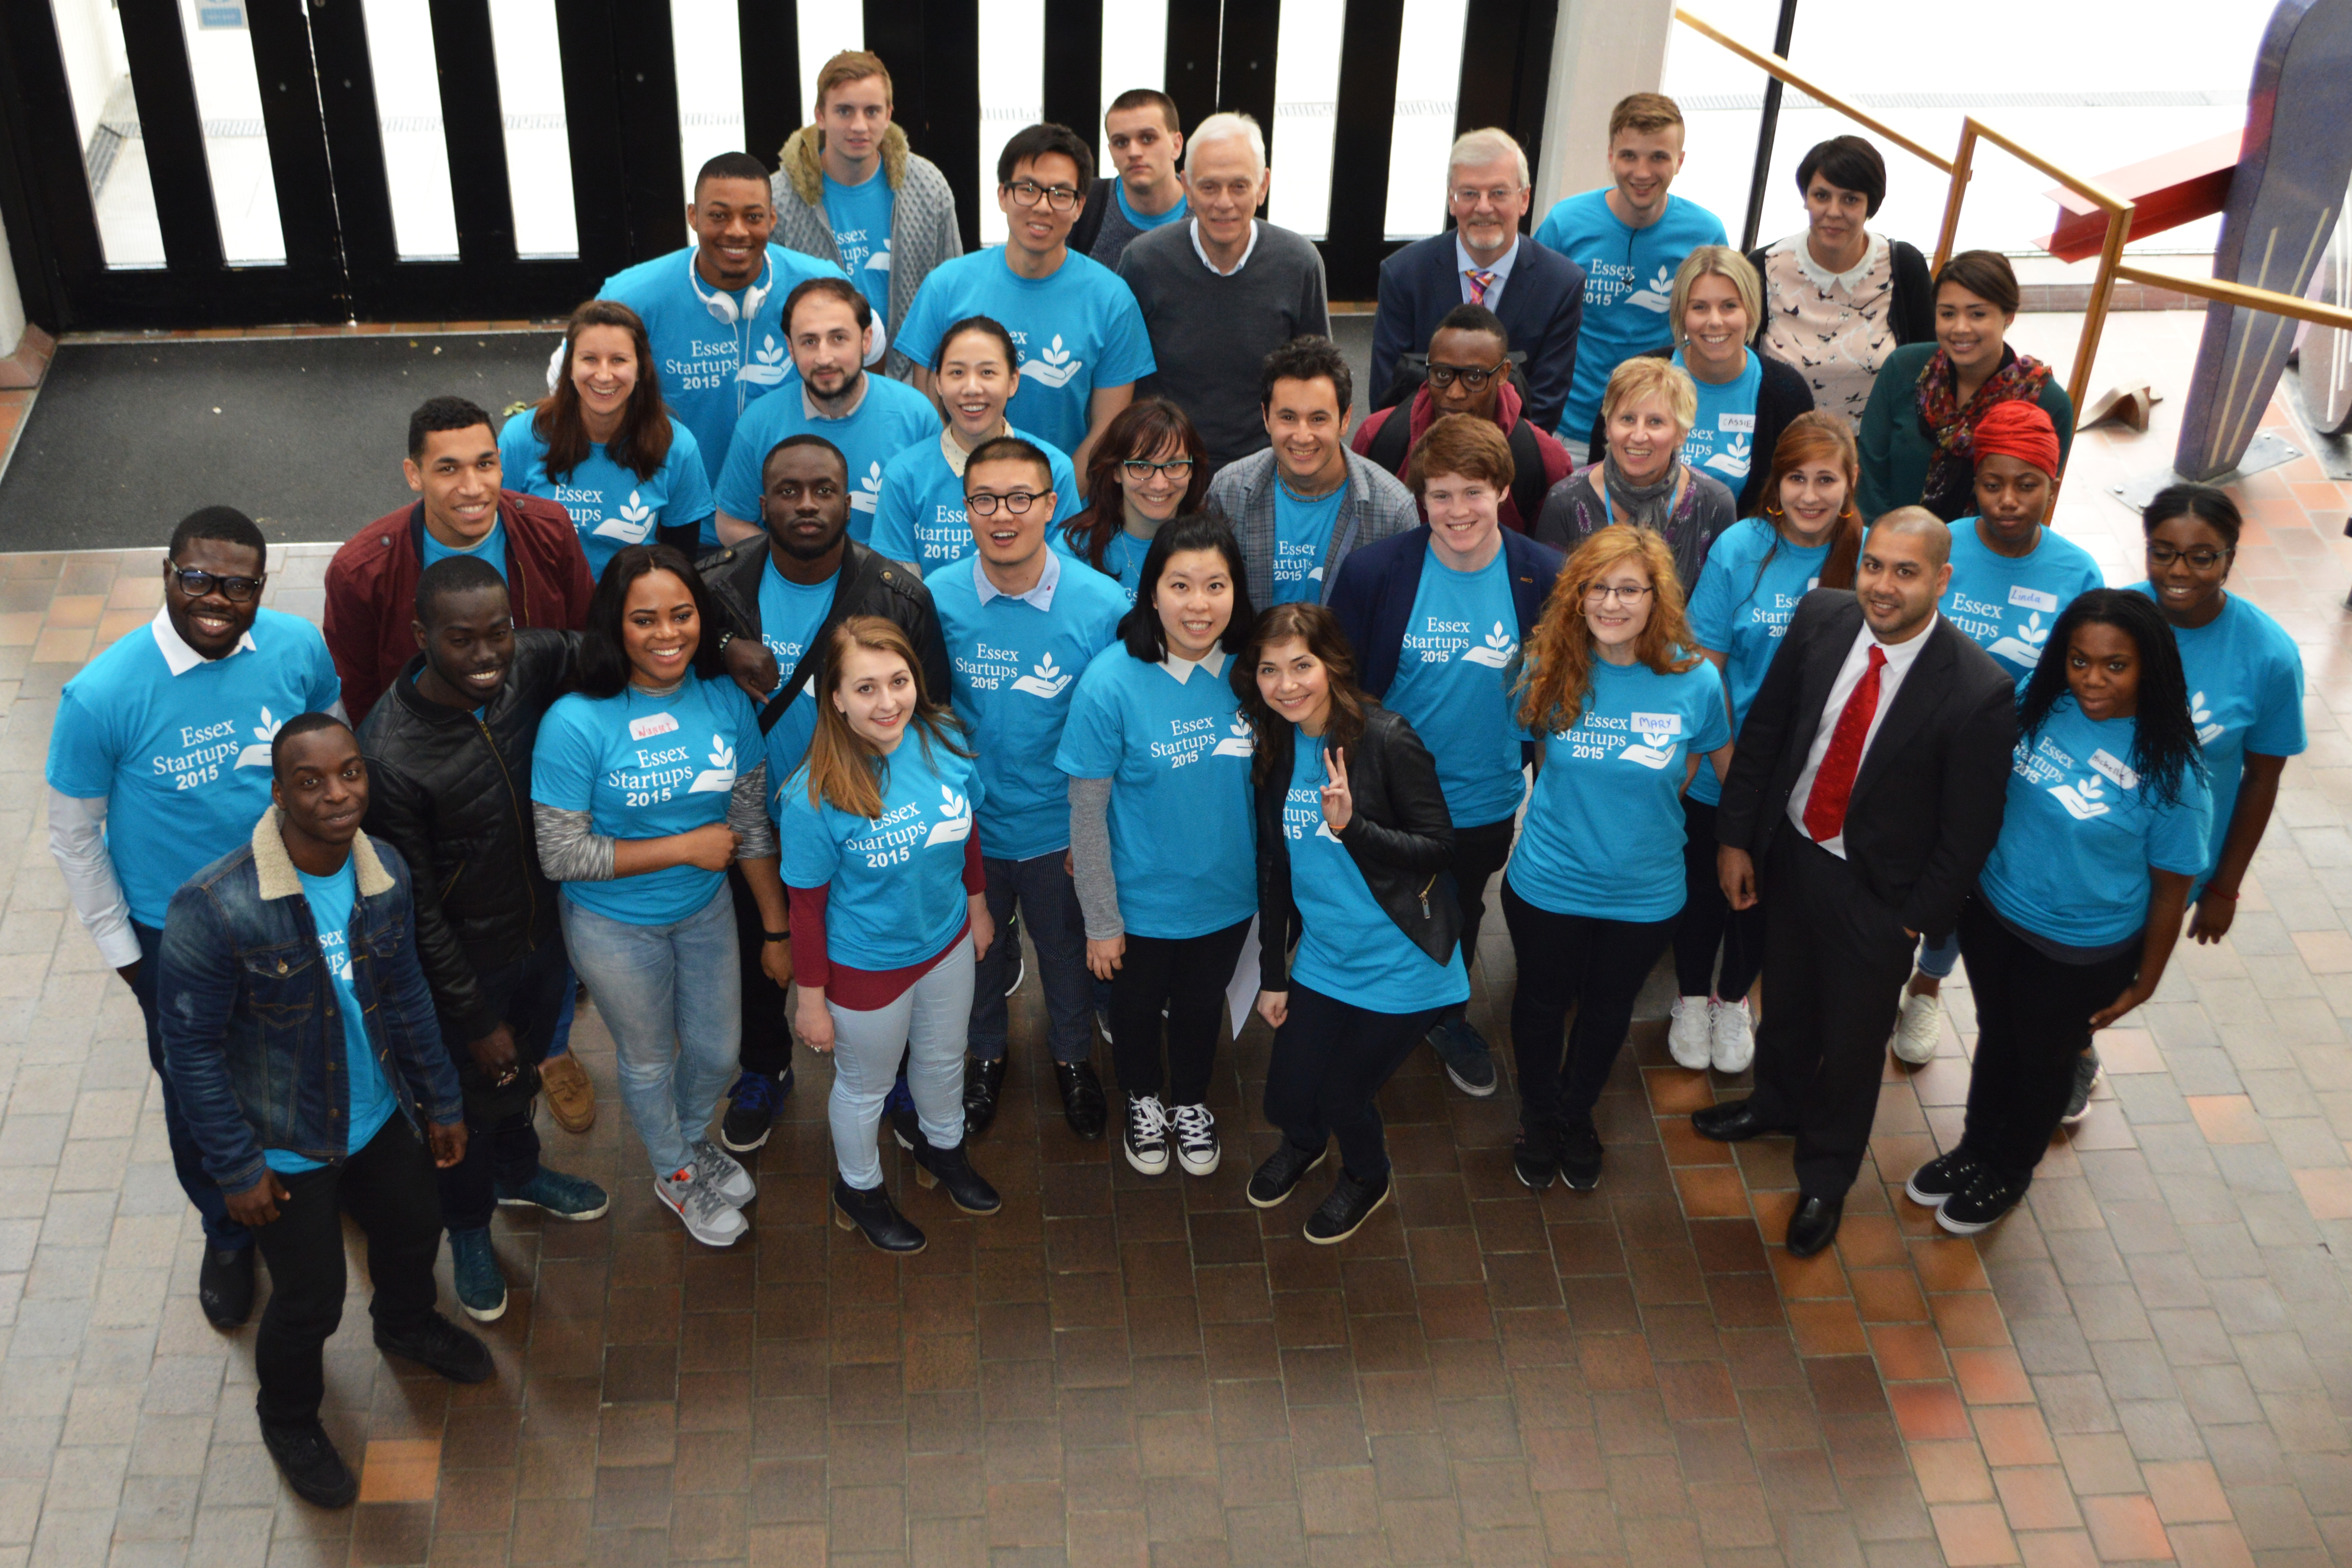 Une photographie montre un groupe de personnes, composé de jeunes et de personnes âgées, portant des chemises sur lesquelles on peut lire : Essex Startups 20 15.